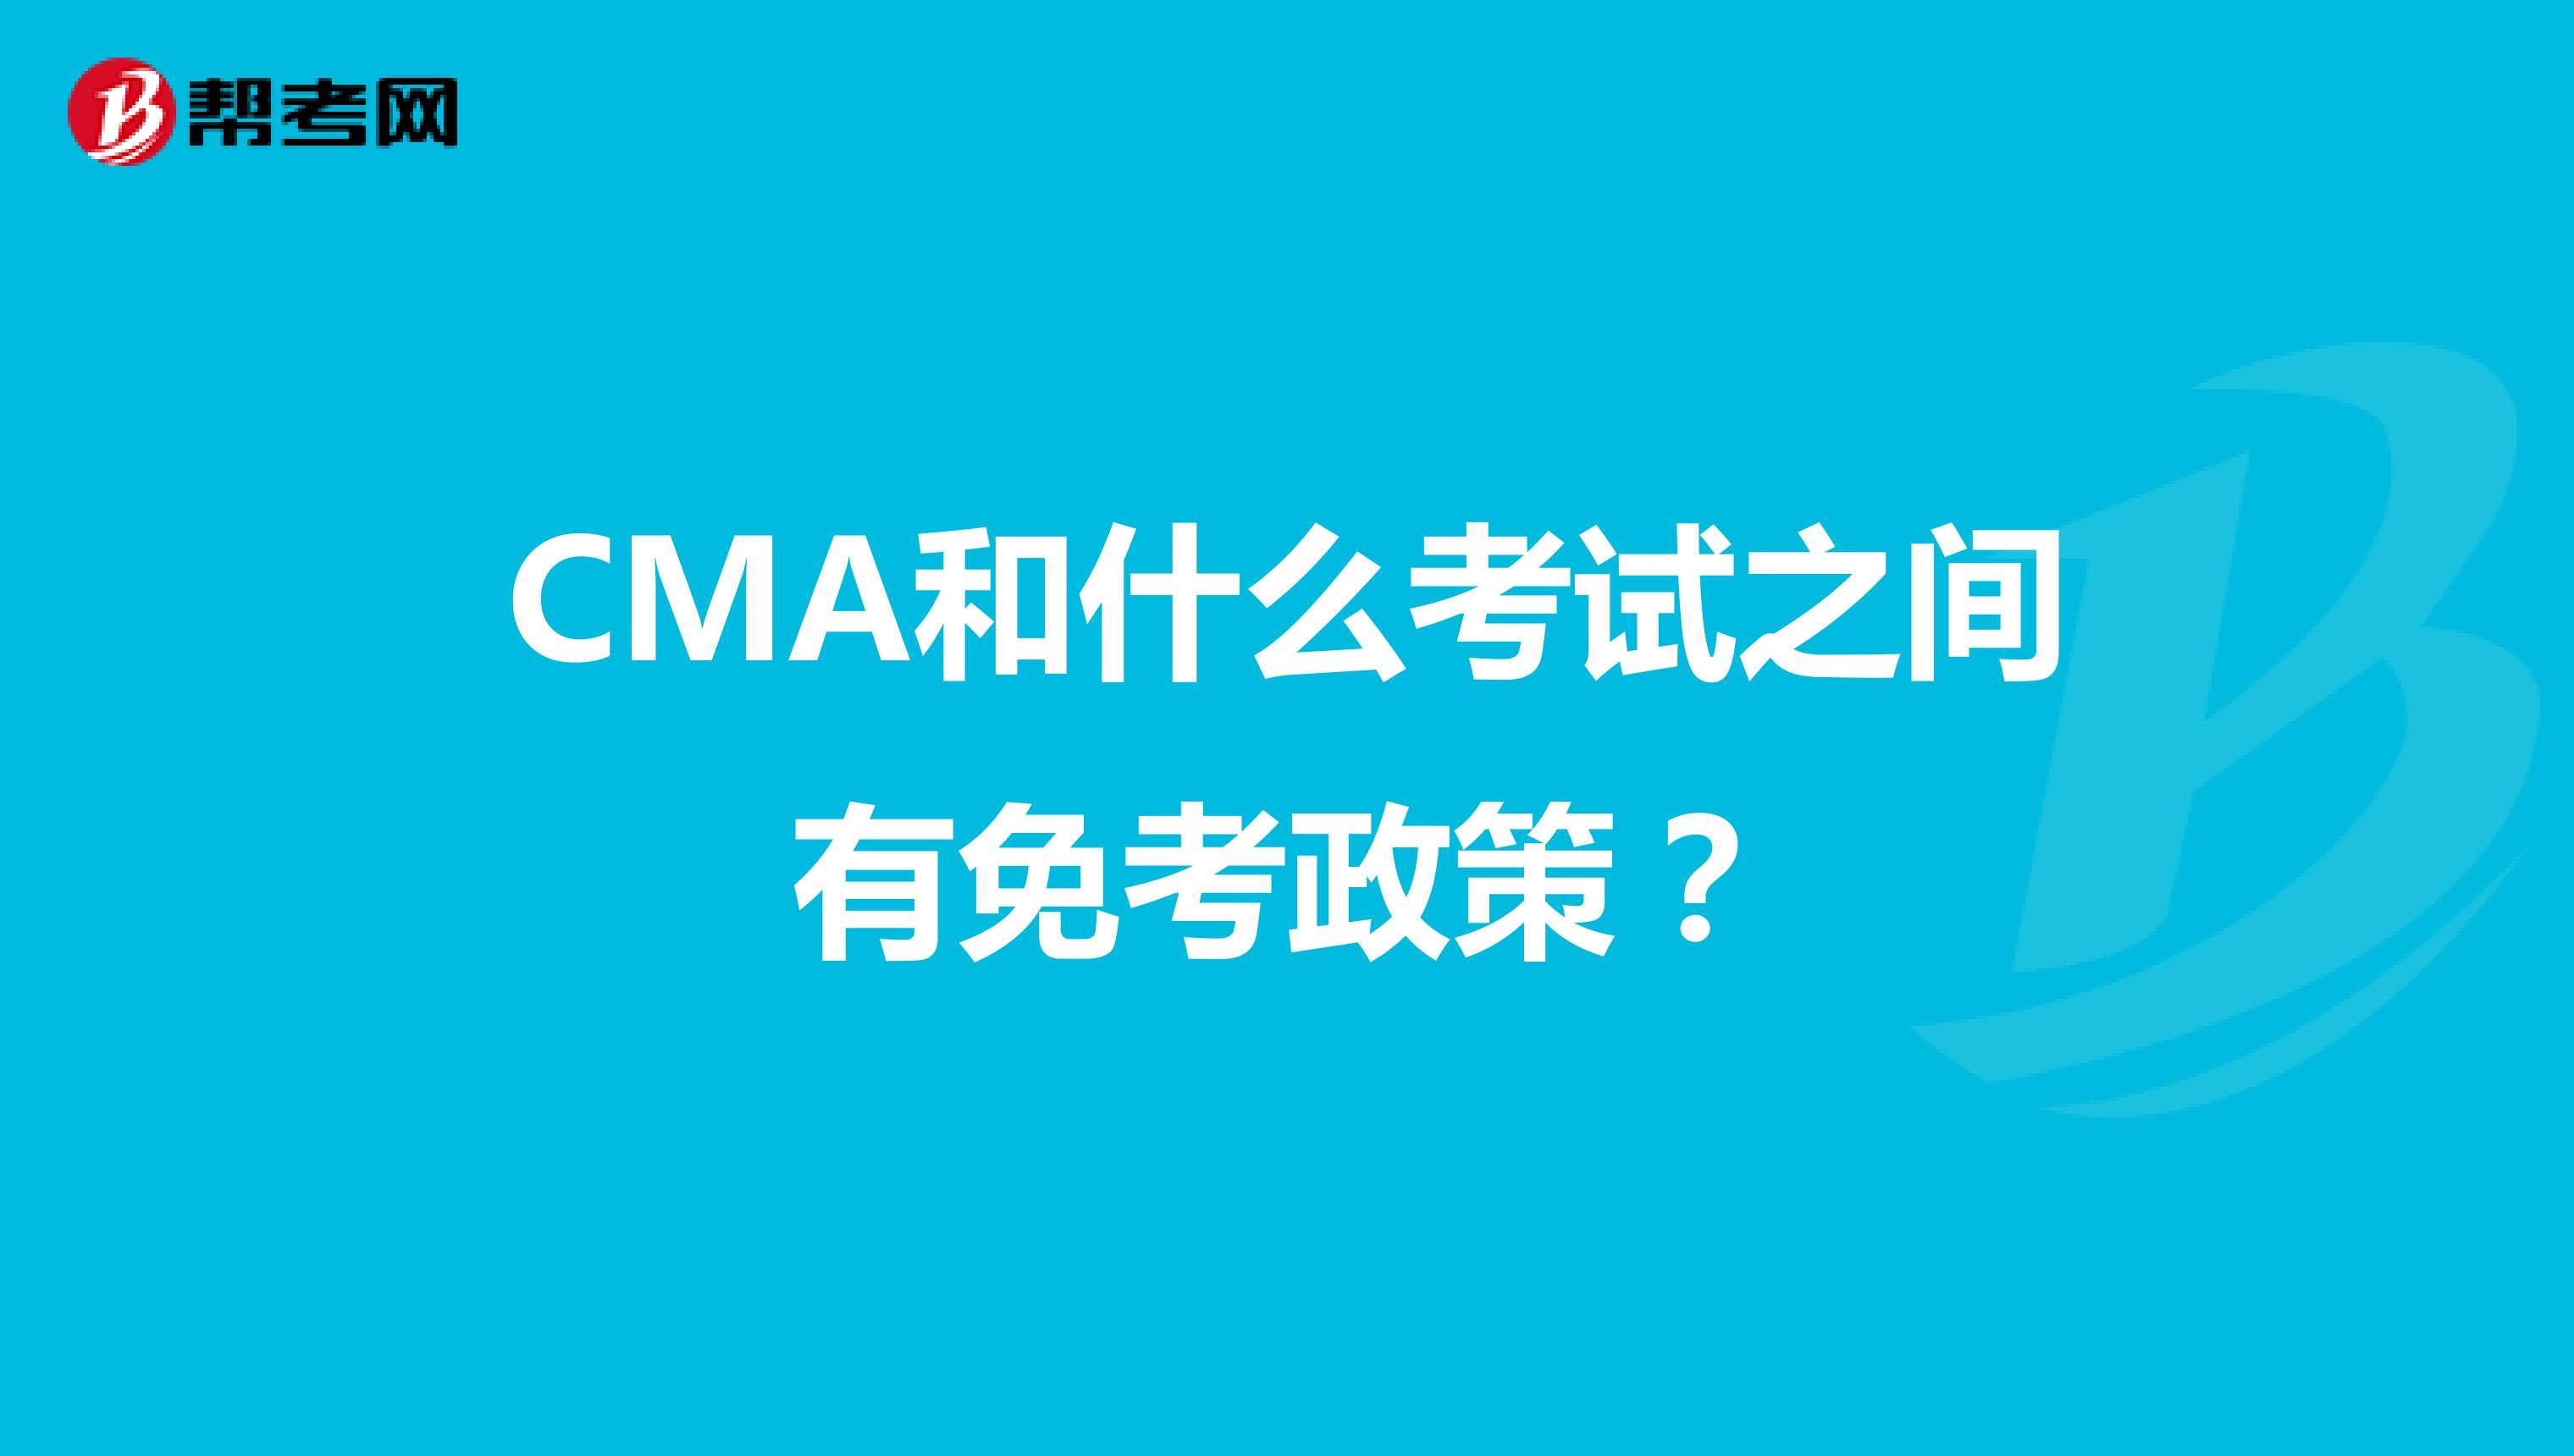 CMA和什么考试之间有免考政策？